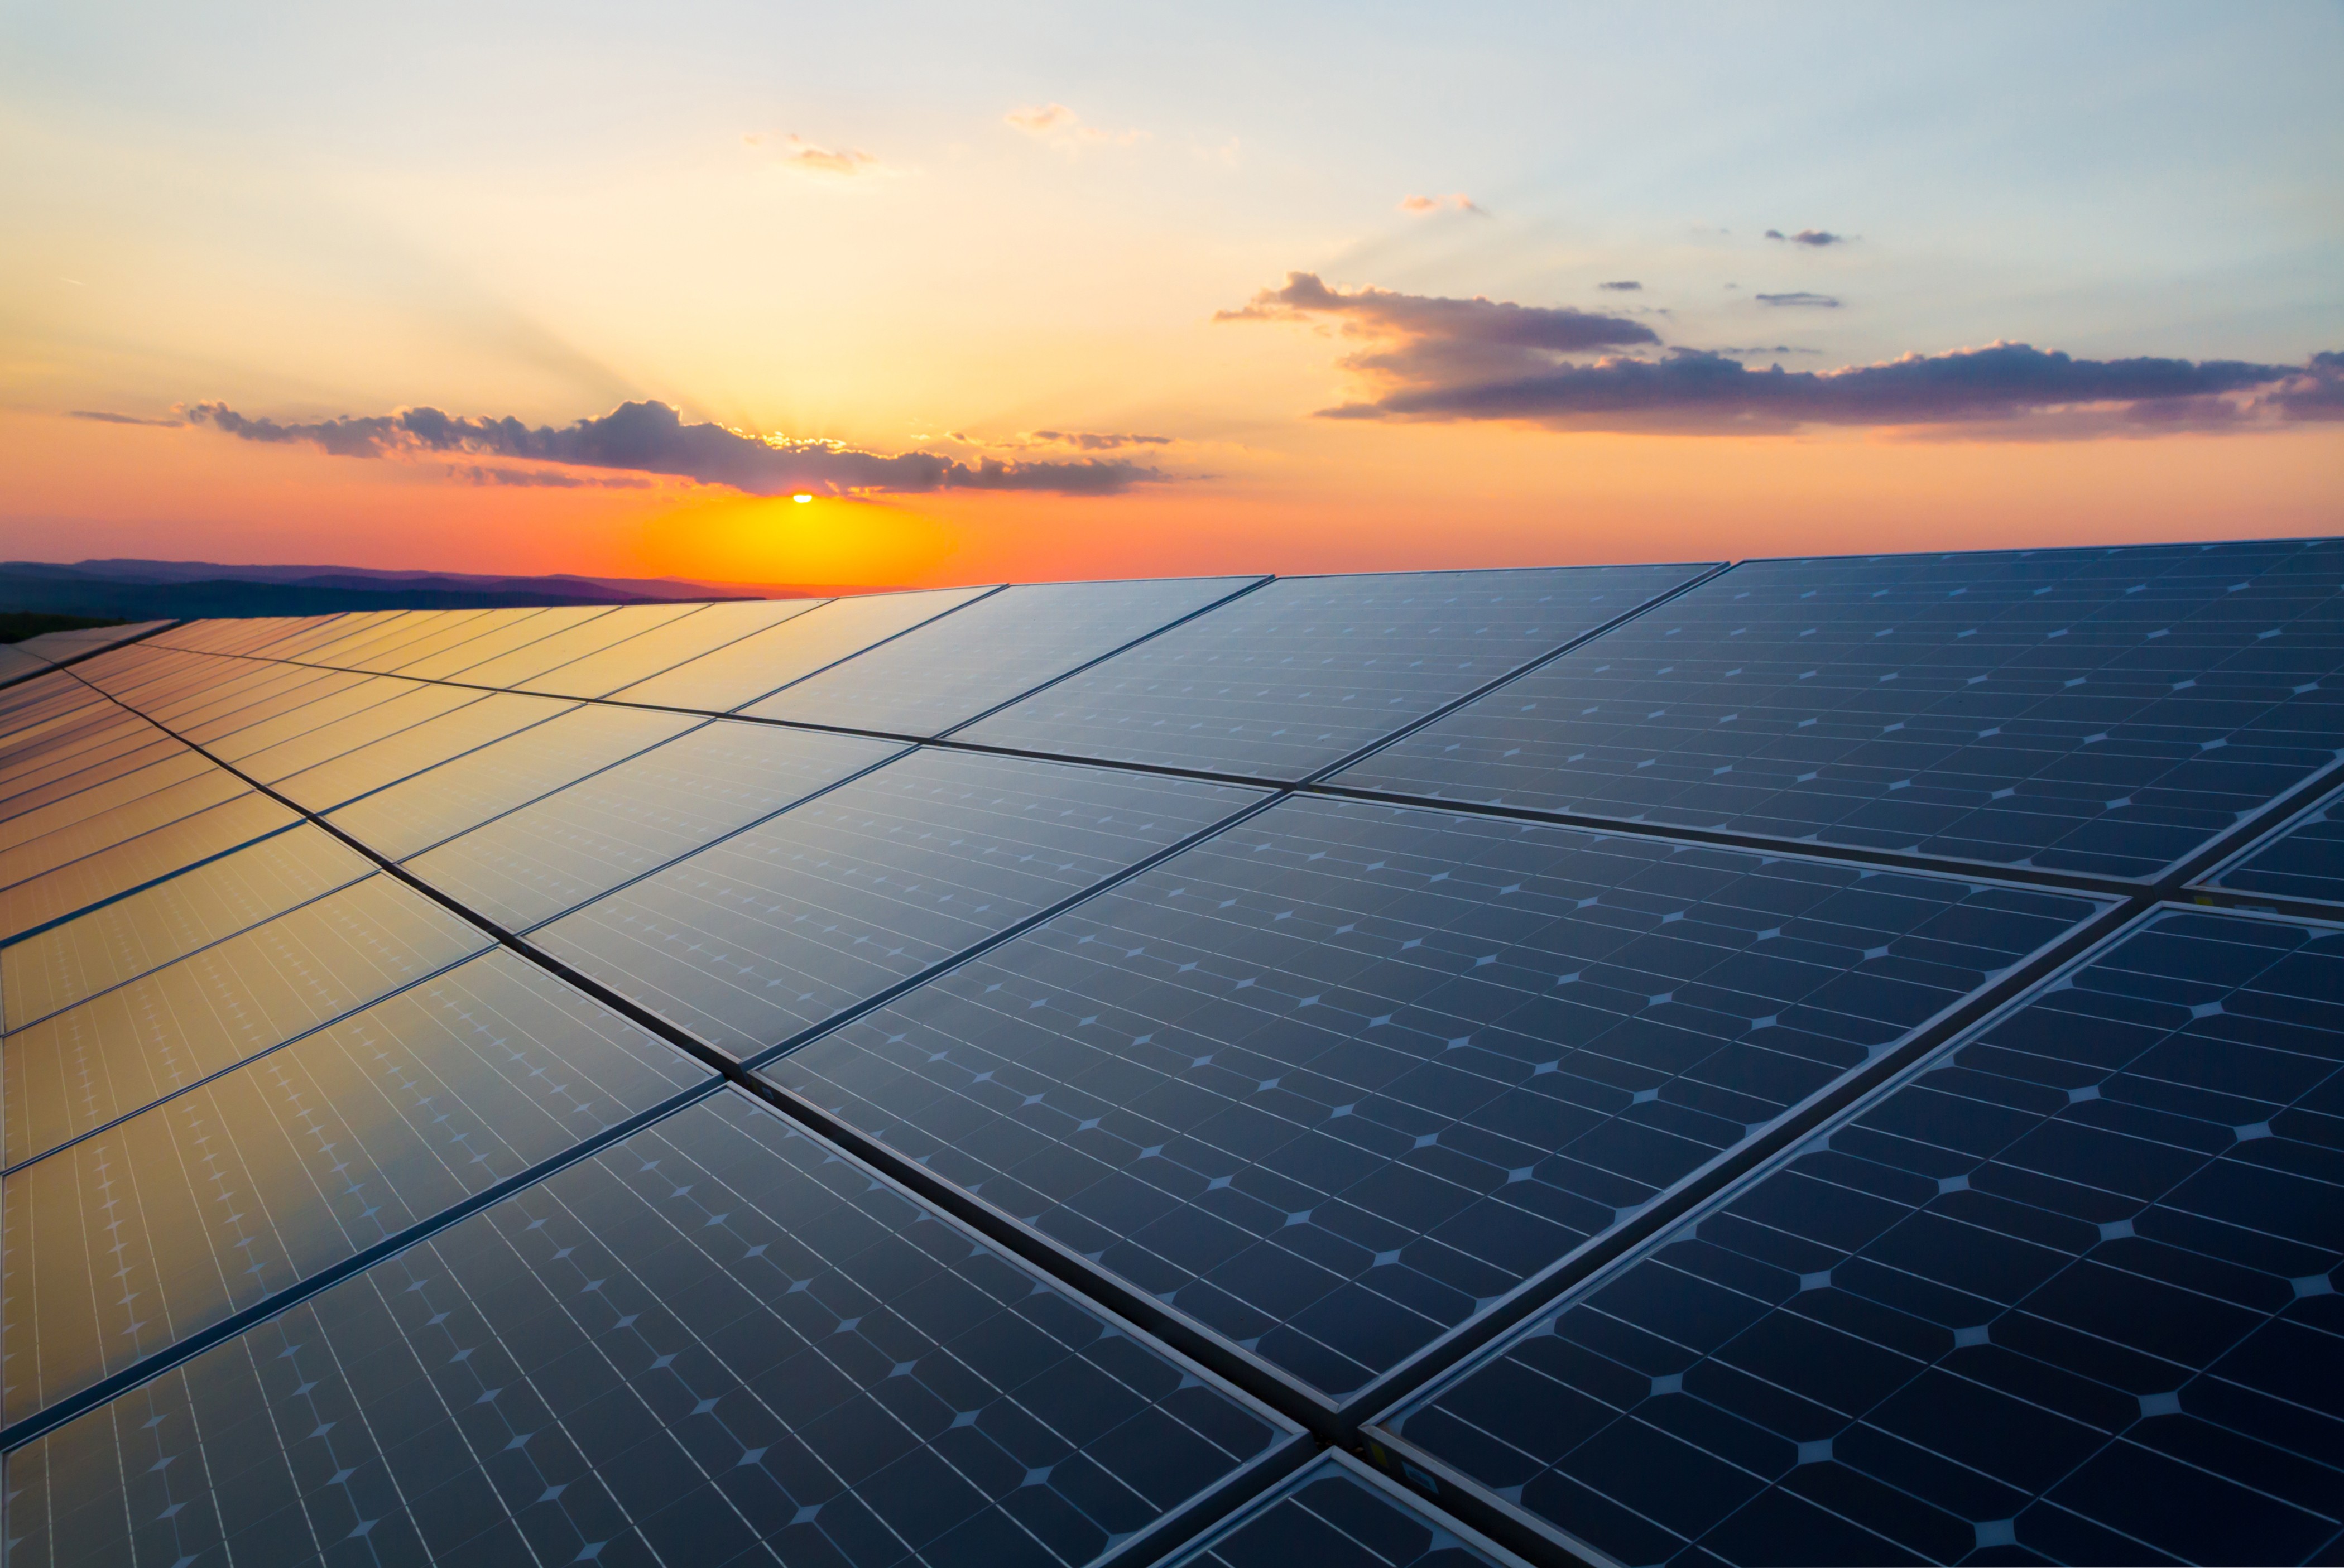 Financiamento para energia solar: o que é, quais as vantagens, o que avaliar?